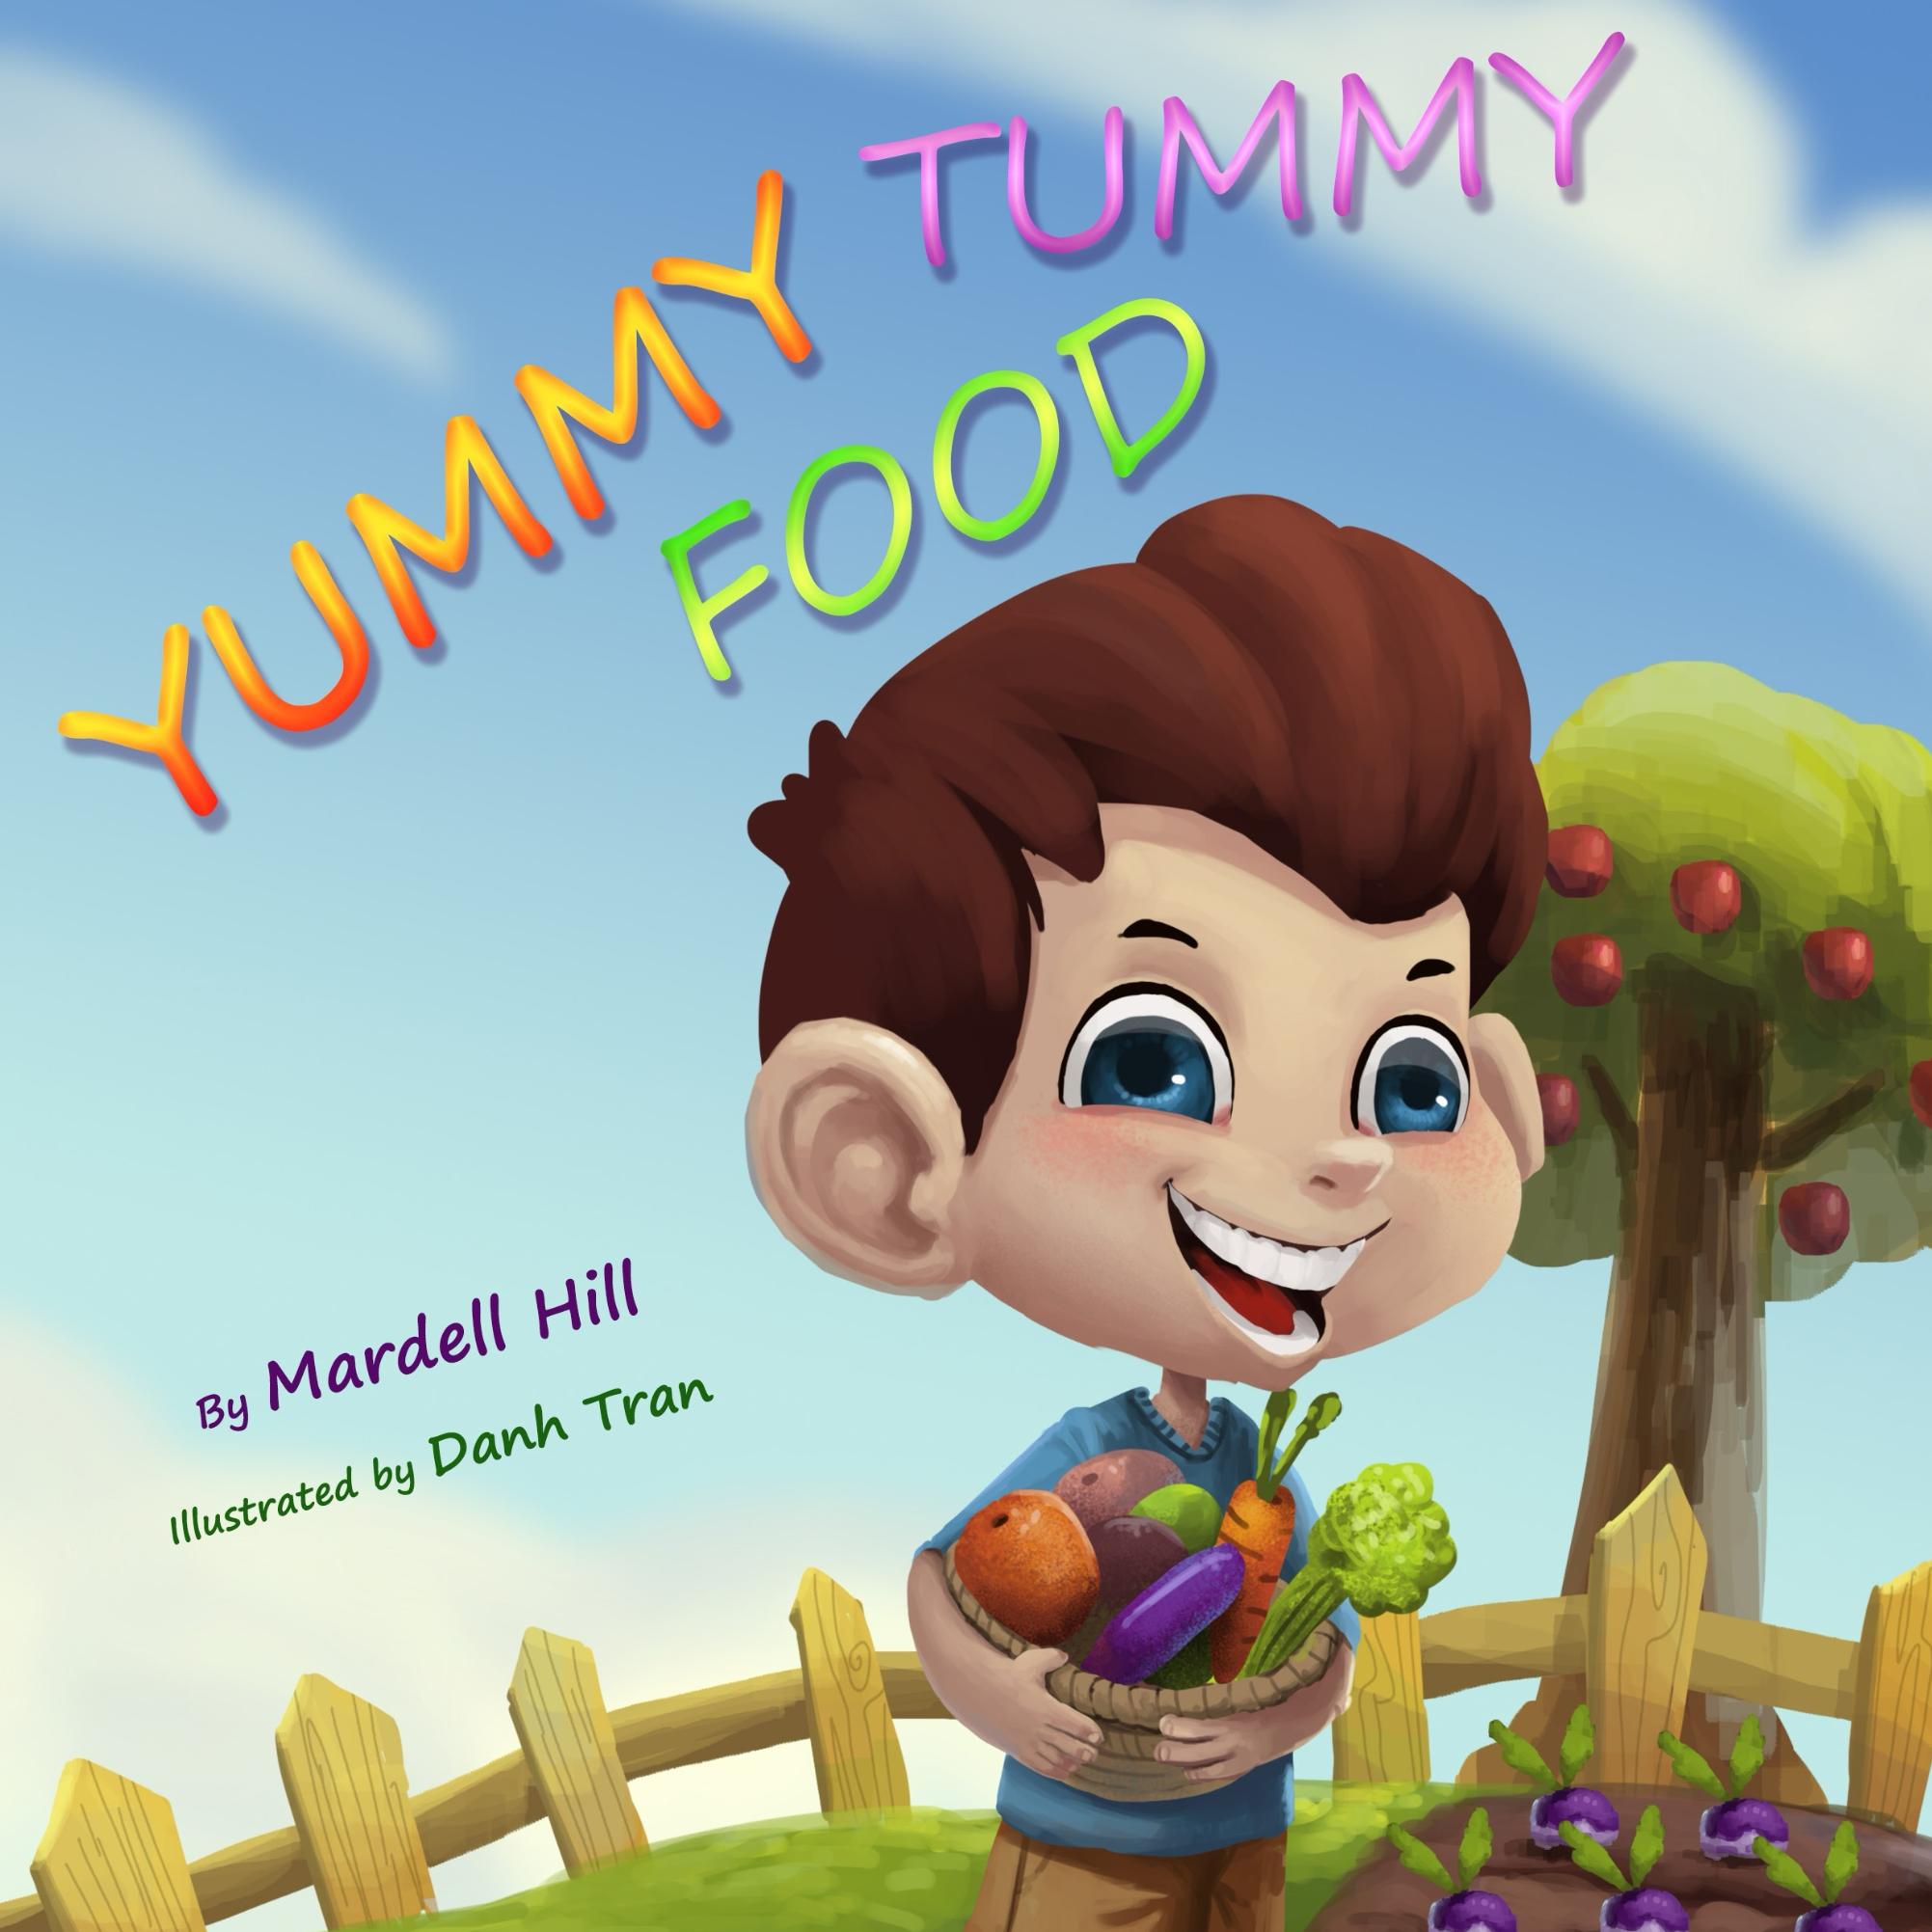 FREE: Yummy Tummy Food by Mardell Hill